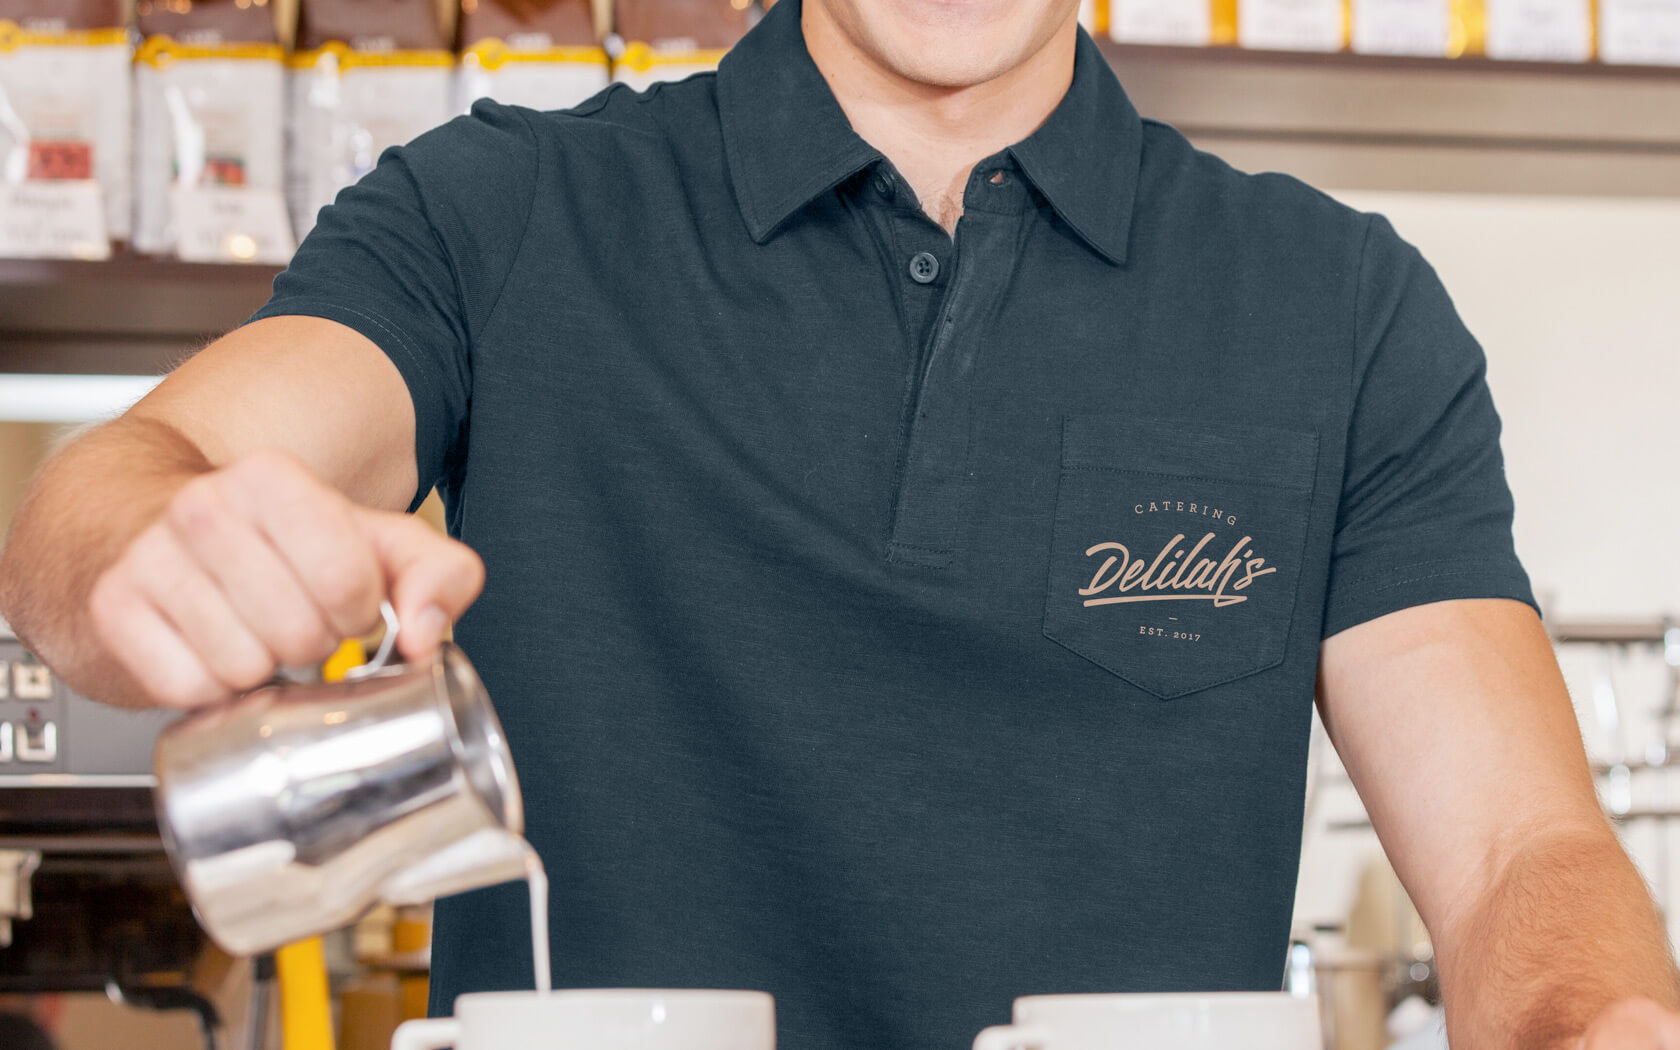 Delilah’s. T-shirt branding